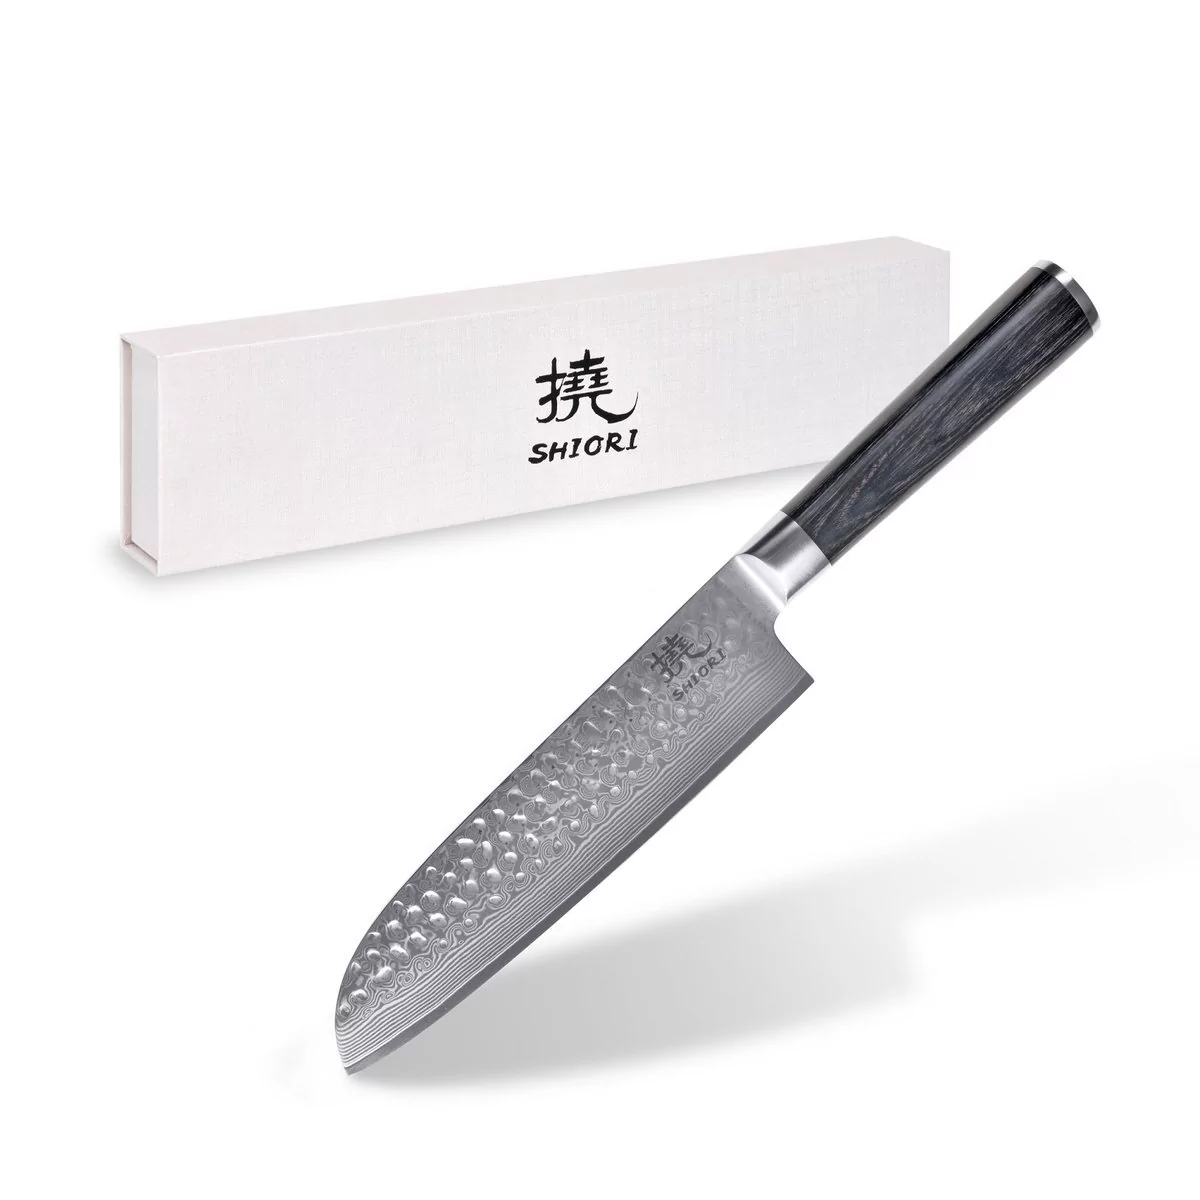 Shiori 撓 Chairo Santoku - uniwersalny, wielozadaniowy nóż szefa kuchni